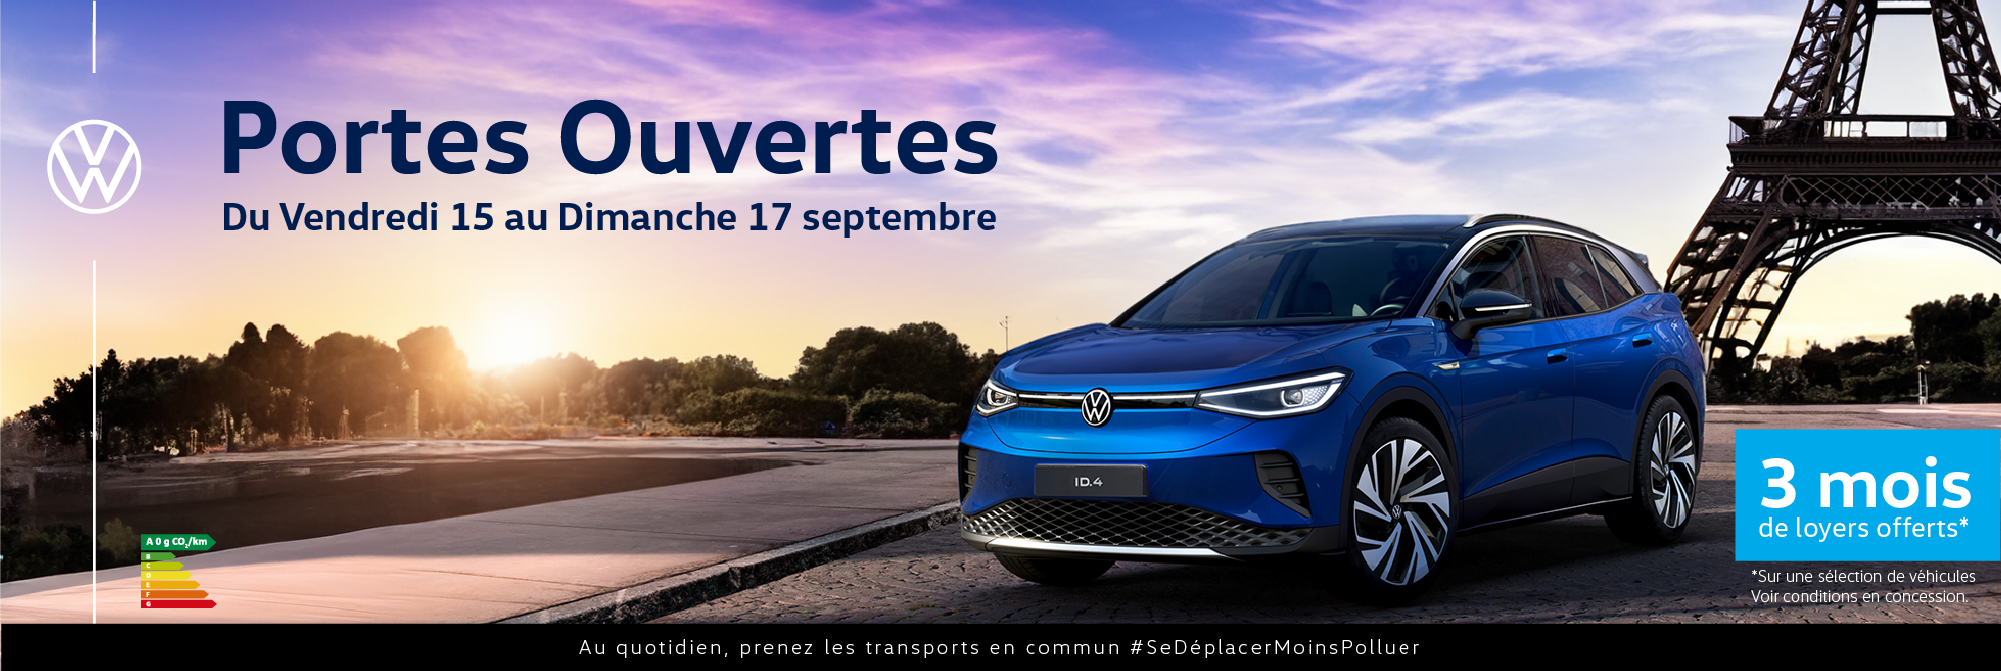 Volkswagen Paris 20 - Journées Portes Ouvertes du 15 au 17 septembre 